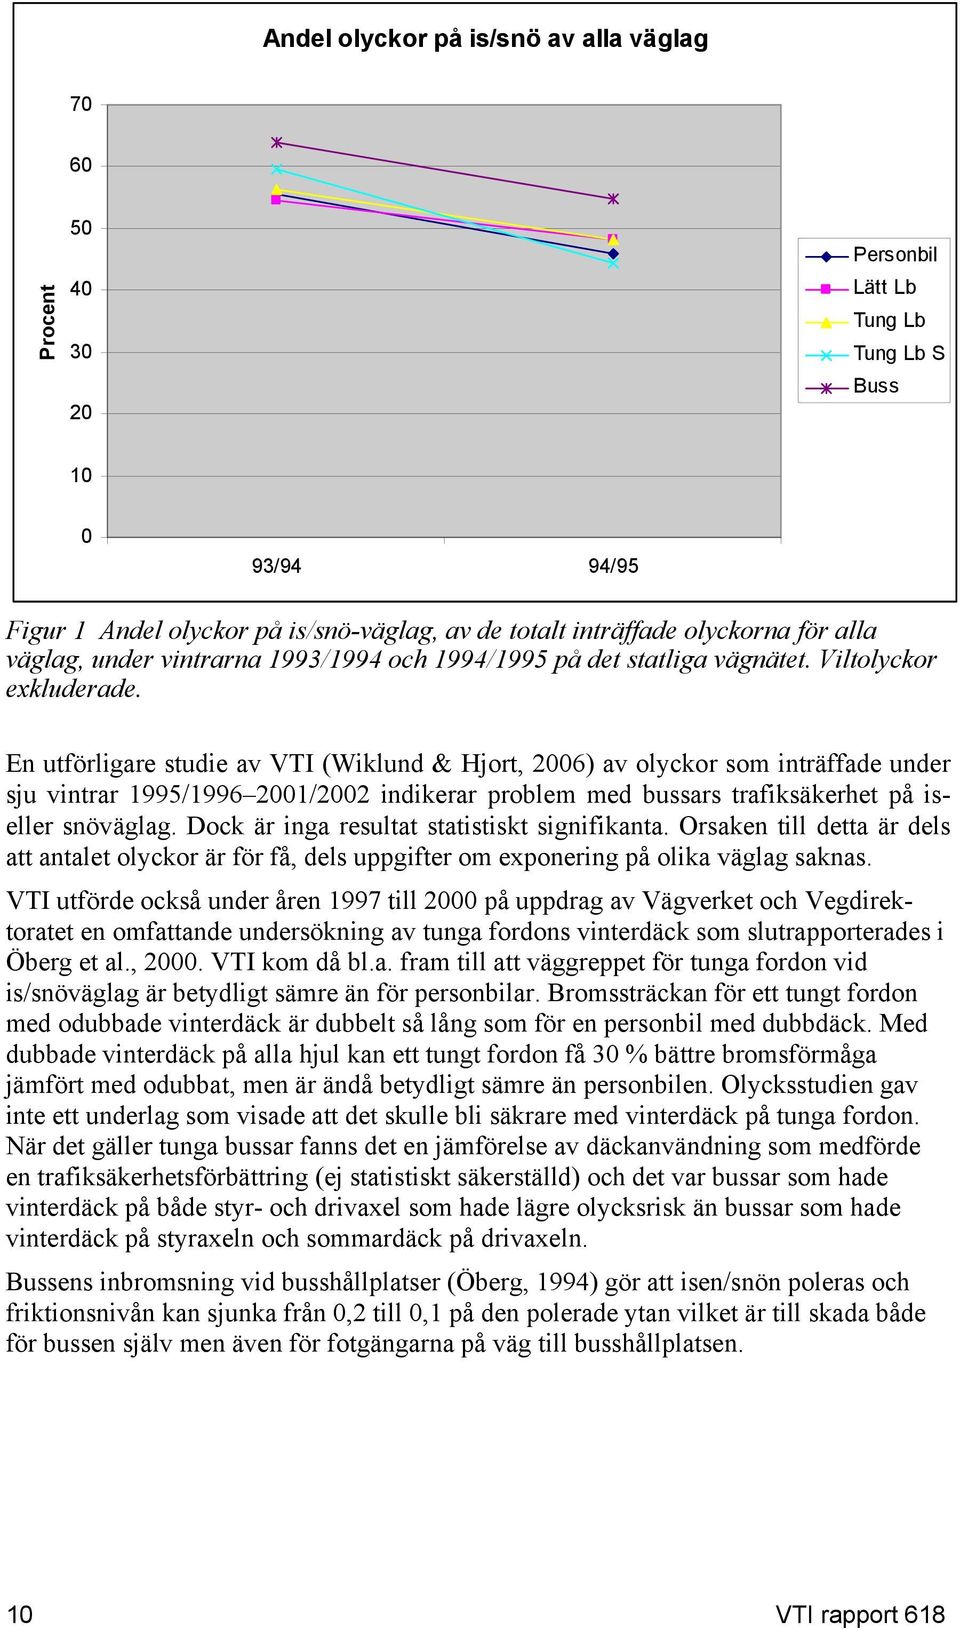 En utförligare studie av VTI (Wiklund & Hjort, 2006) av olyckor som inträffade under sju vintrar 1995/1996 2001/2002 indikerar problem med bussars trafiksäkerhet på iseller snöväglag.